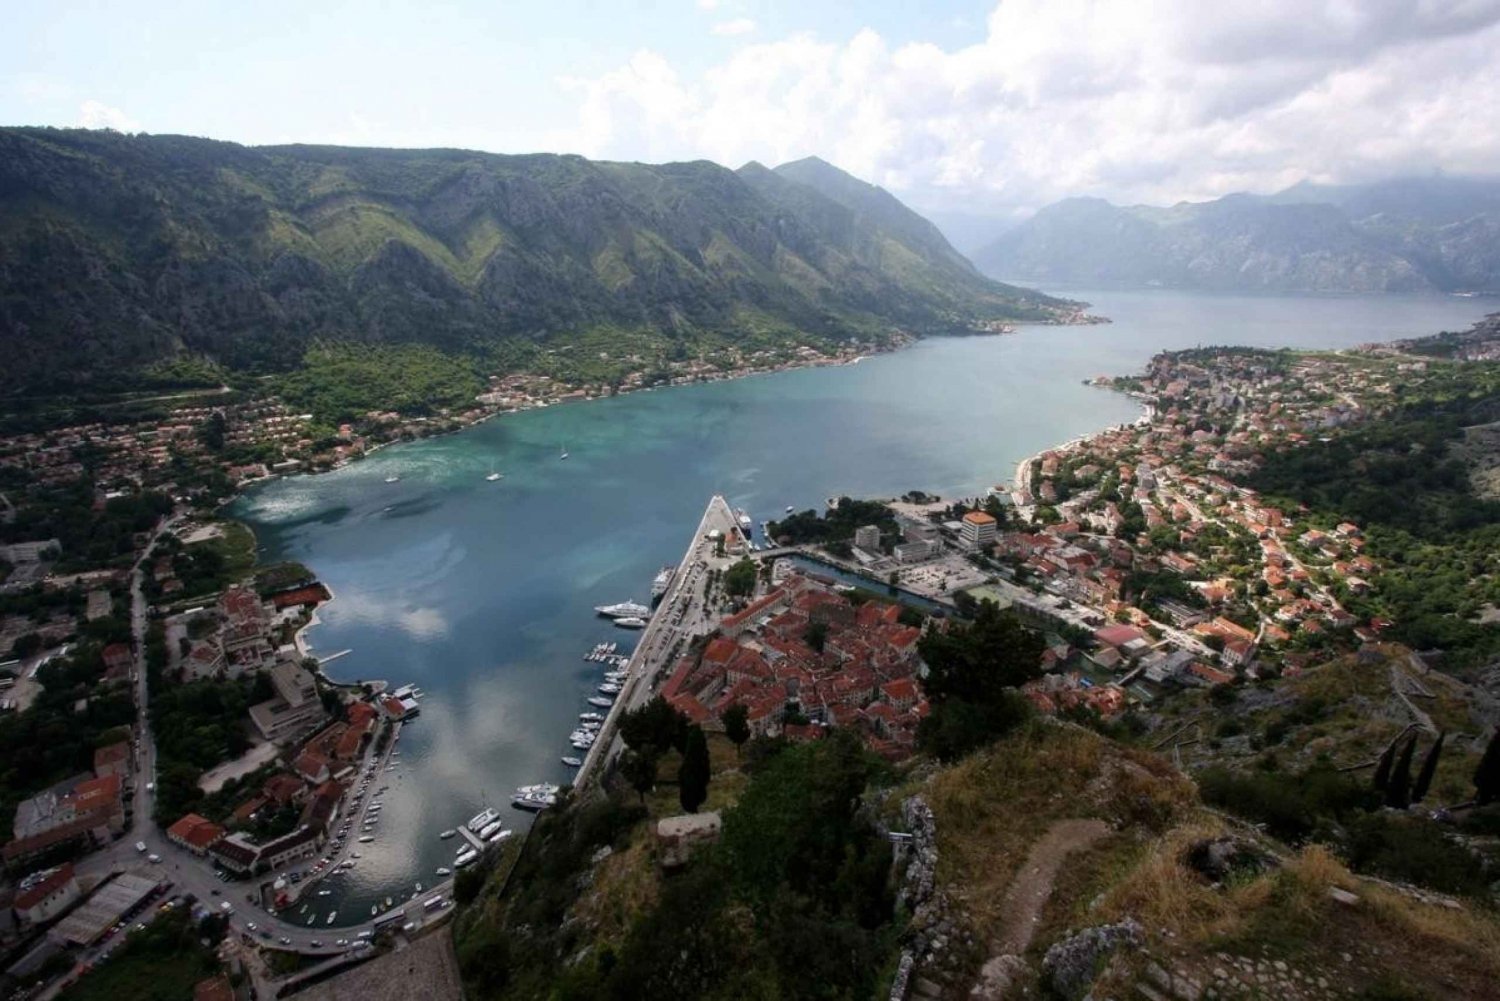 Dagvullende privé tour naar Montenegro vanuit Dubrovnik